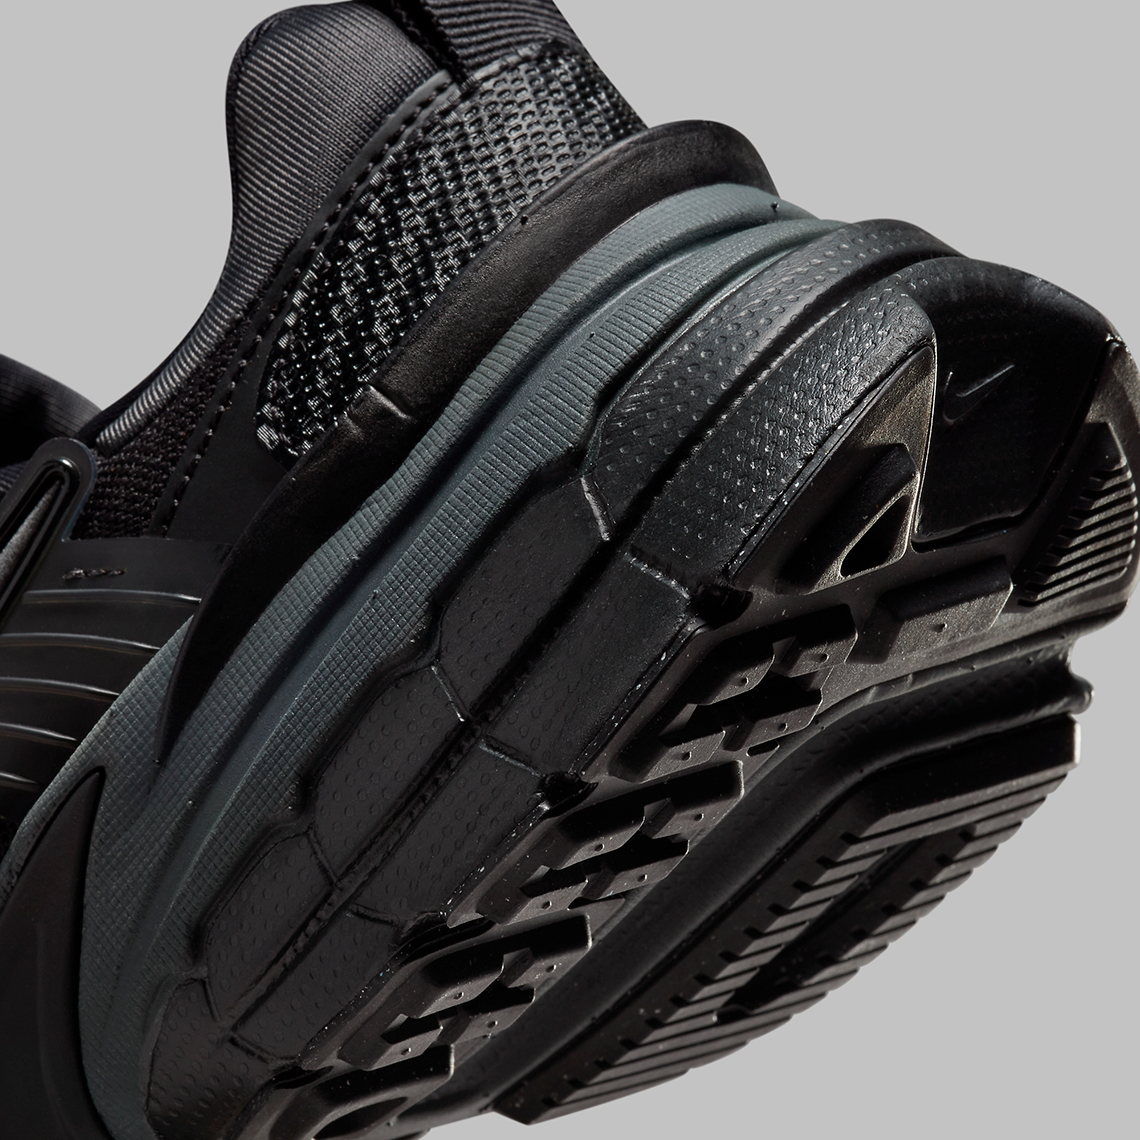 Nike Runtekk Triple Black Fd0736 001 Release Date 3